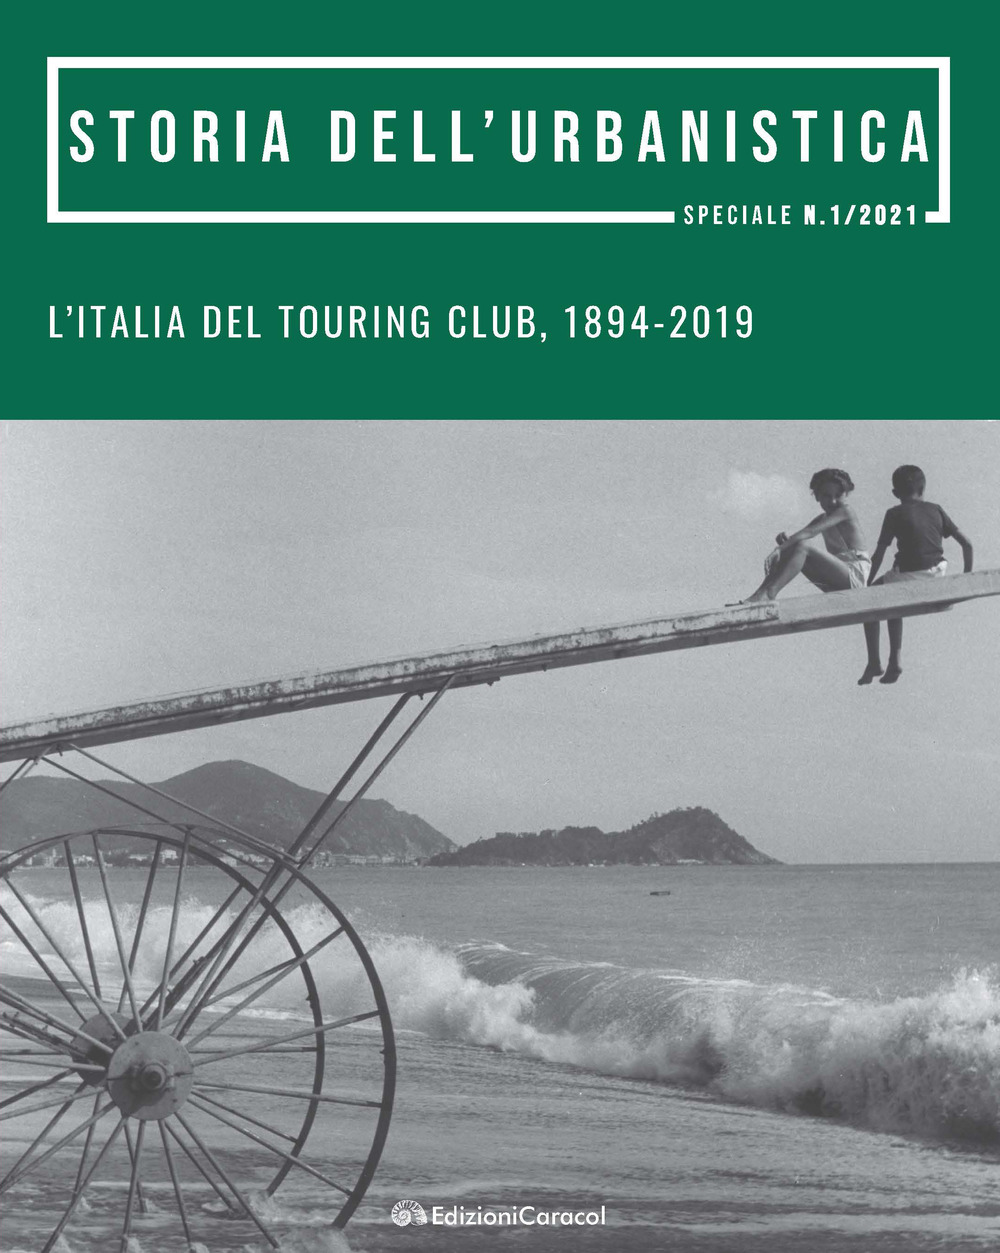 L'Italia del Touring Club, 1894-2019. Promozione, tutela e valorizzazione del patrimonio culturale e del paesaggio